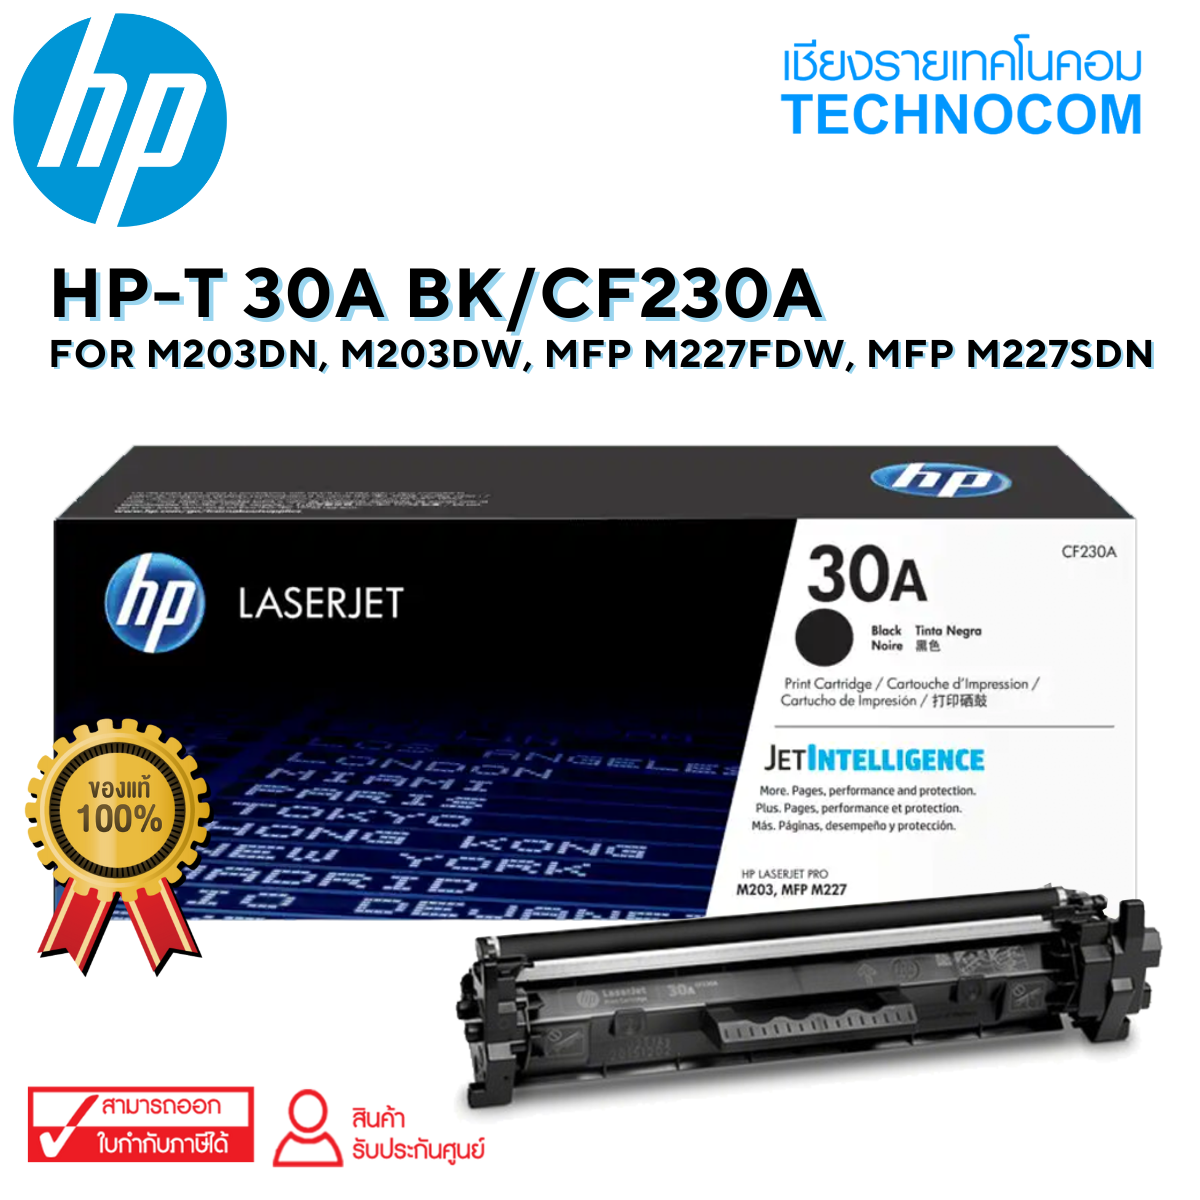 HP-T 30A BK/CF230A For M203dn, M203dw, MFP M227fdw, MFP M227sdn